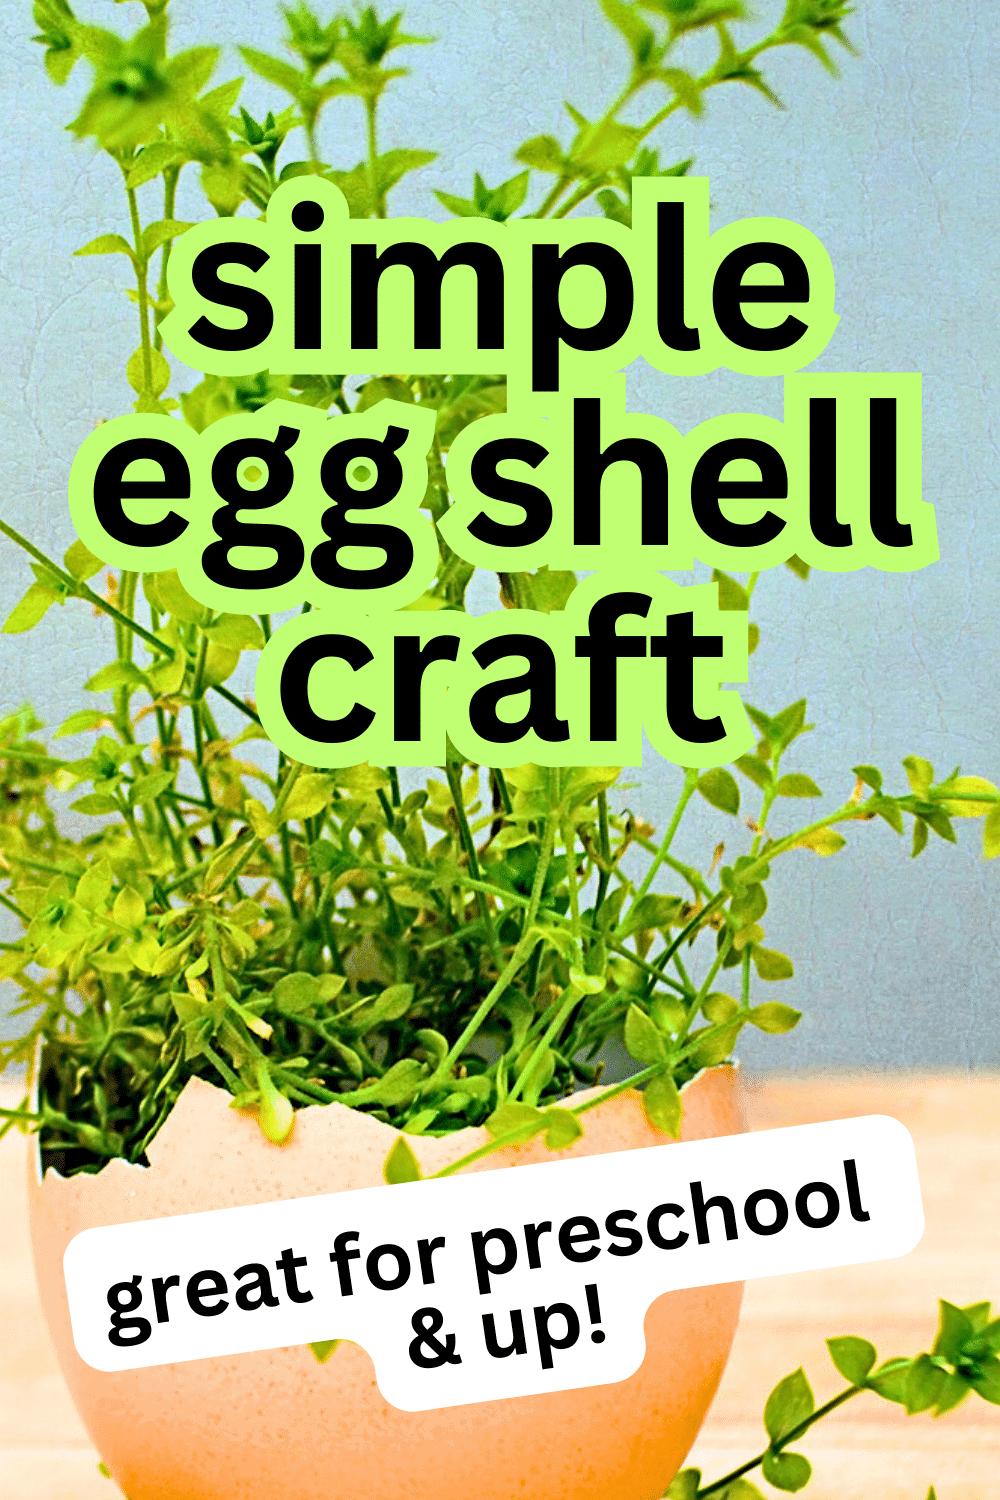 Eggshell Craft Ideas for Kids text over image of egg shell garden in eggshell carton